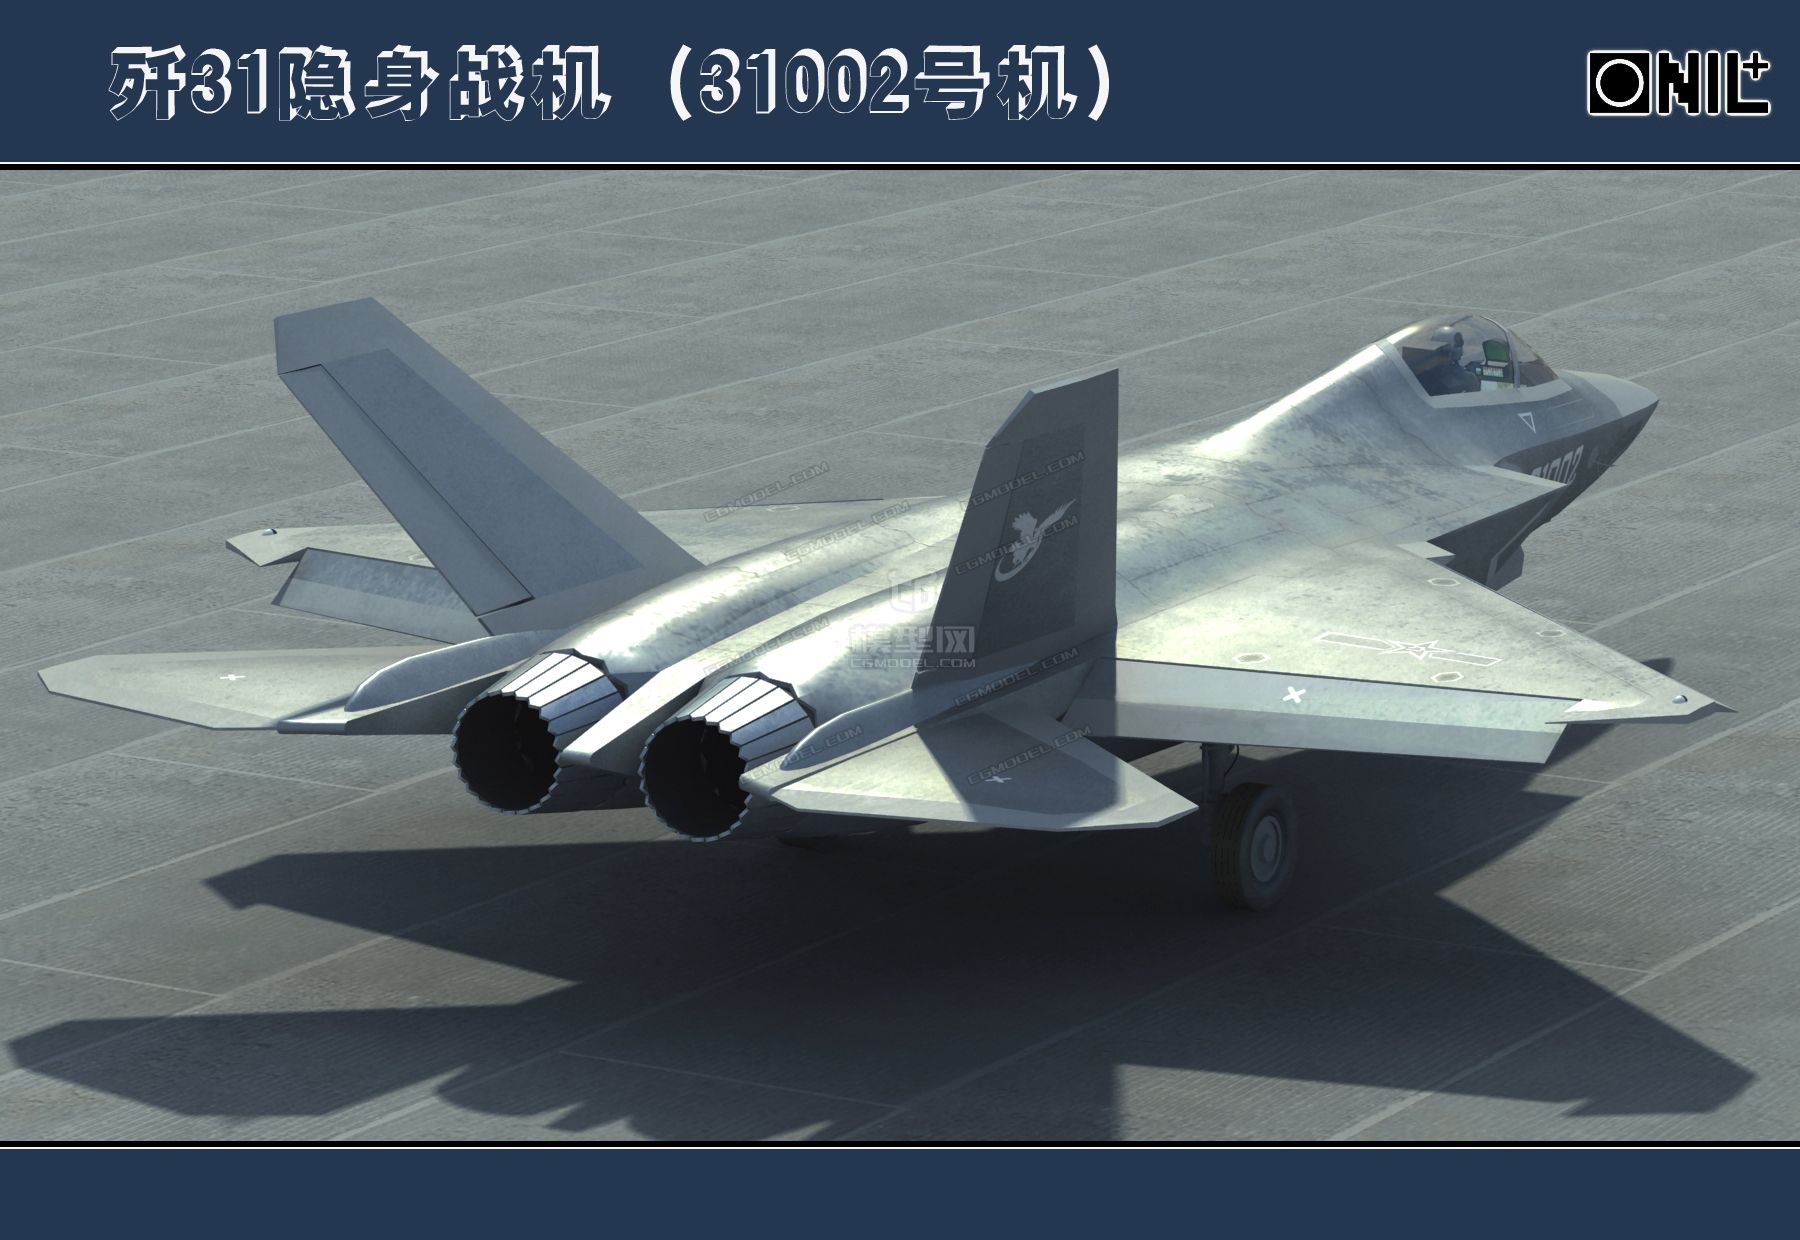 歼31隐身战机新版31002号模型